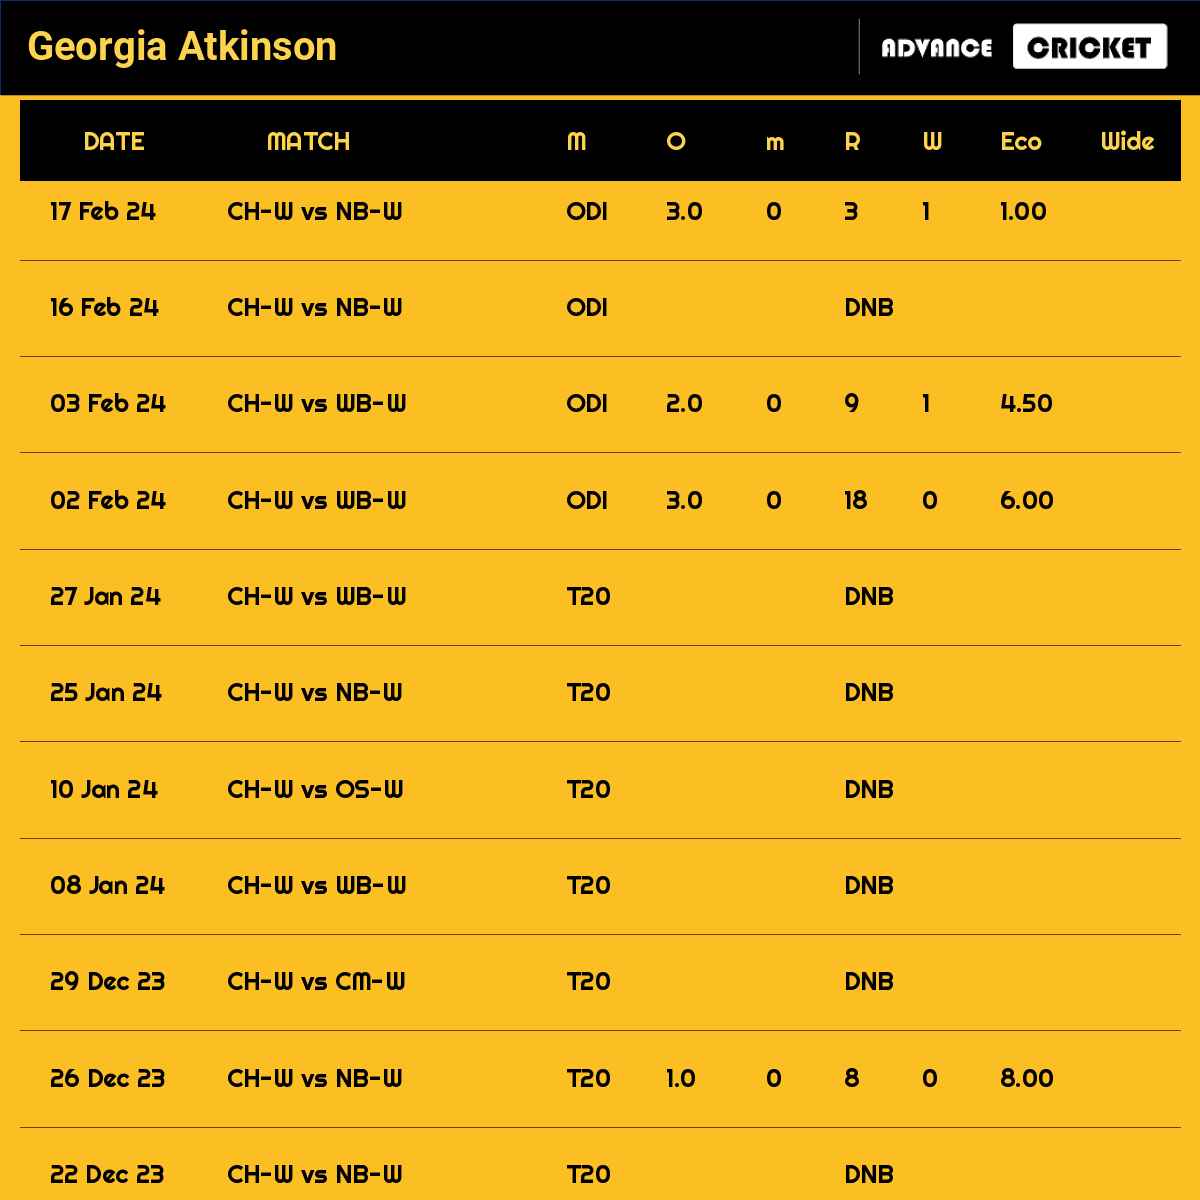 Georgia Atkinson recent matches